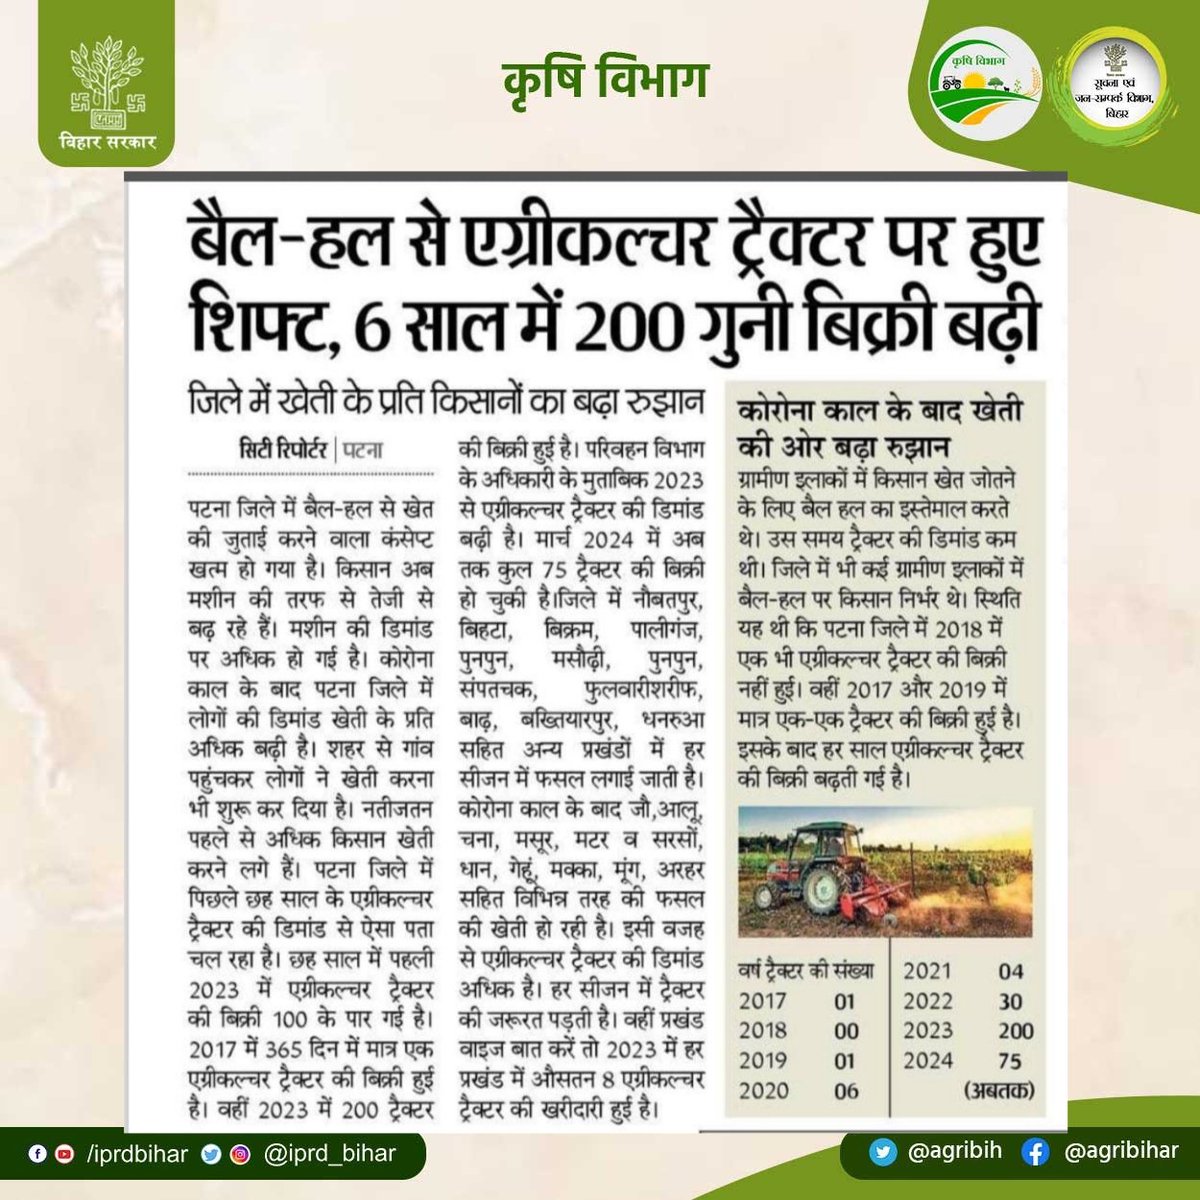 बैल - हल से एग्रीकल्चर ट्रैक्टर पर हुए शिफ्ट, 6 साल में 200 गुनी बिक्री बढ़ी। कोरोना काल के बाद खेती की ओर बढ़ा रुझान। @SAgarwal_IAS @abhitwittt @BametiBihar @AgriGoI @Bau_sabour @Rpcau_pusa @icarindia @IPRD_Bihar